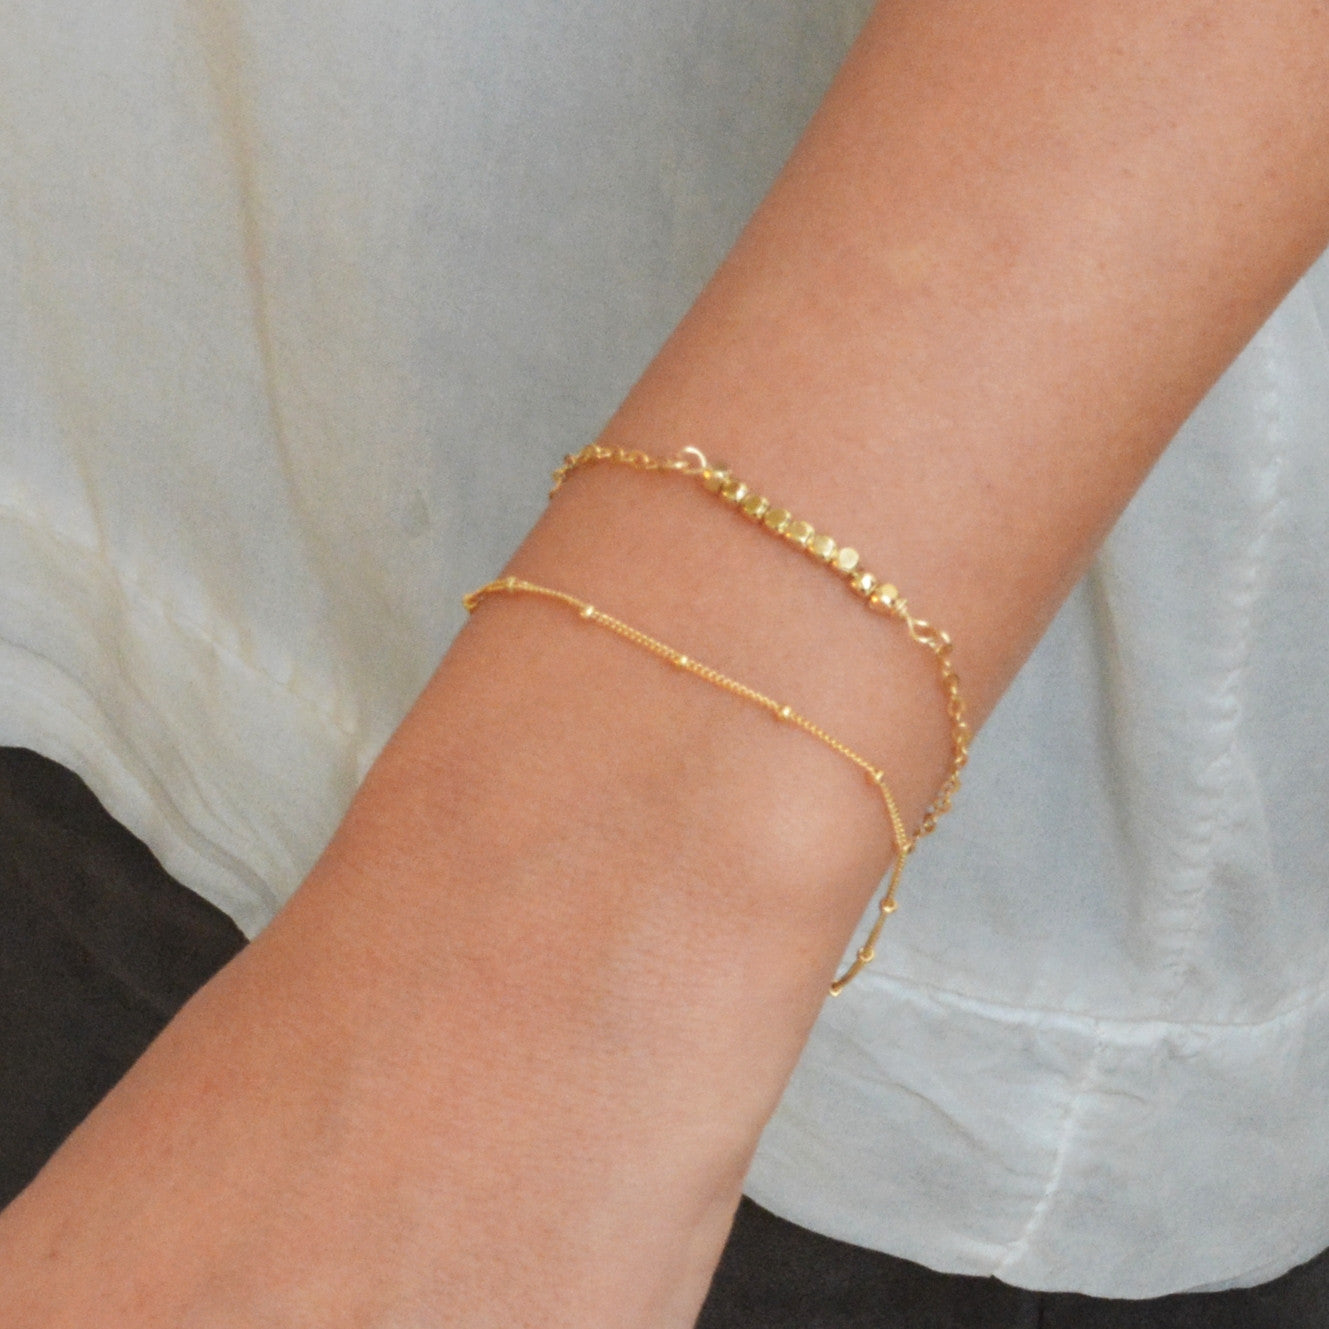 Dainty gold bracelet Gold filled satellite bracelet minimalist bracelet